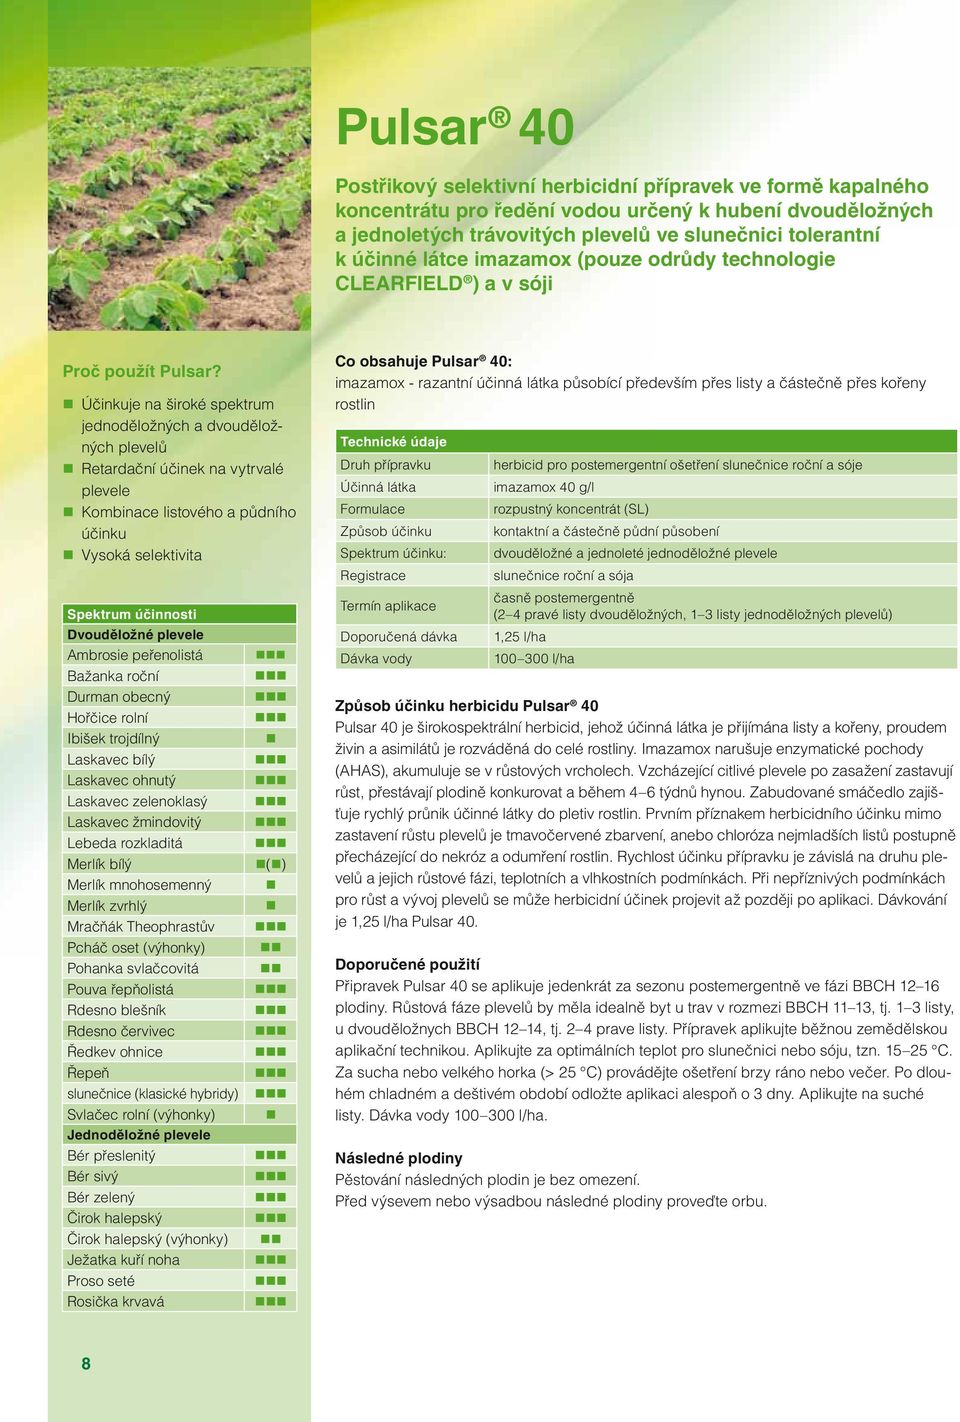 Účinkuje na široké spektrum jednoděložných a dvouděložných plevelů Retardační účinek na vytrvalé plevele Kombinace listového a půdního účinku Vysoká selektivita Spektrum účinnosti Dvouděložné plevele